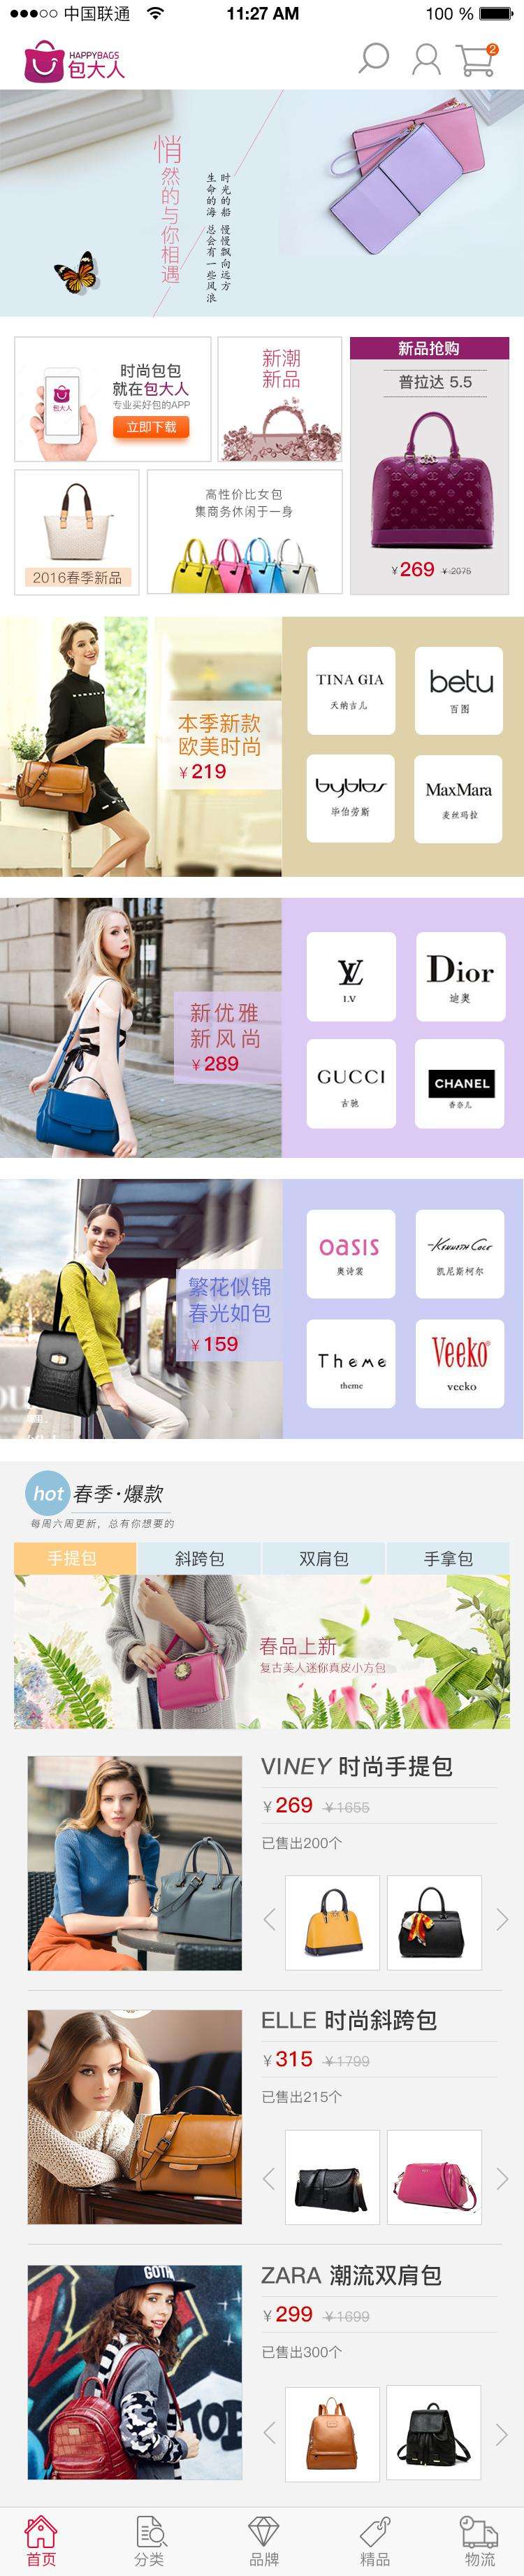 时尚包包购物商城网站APP界面设计模板